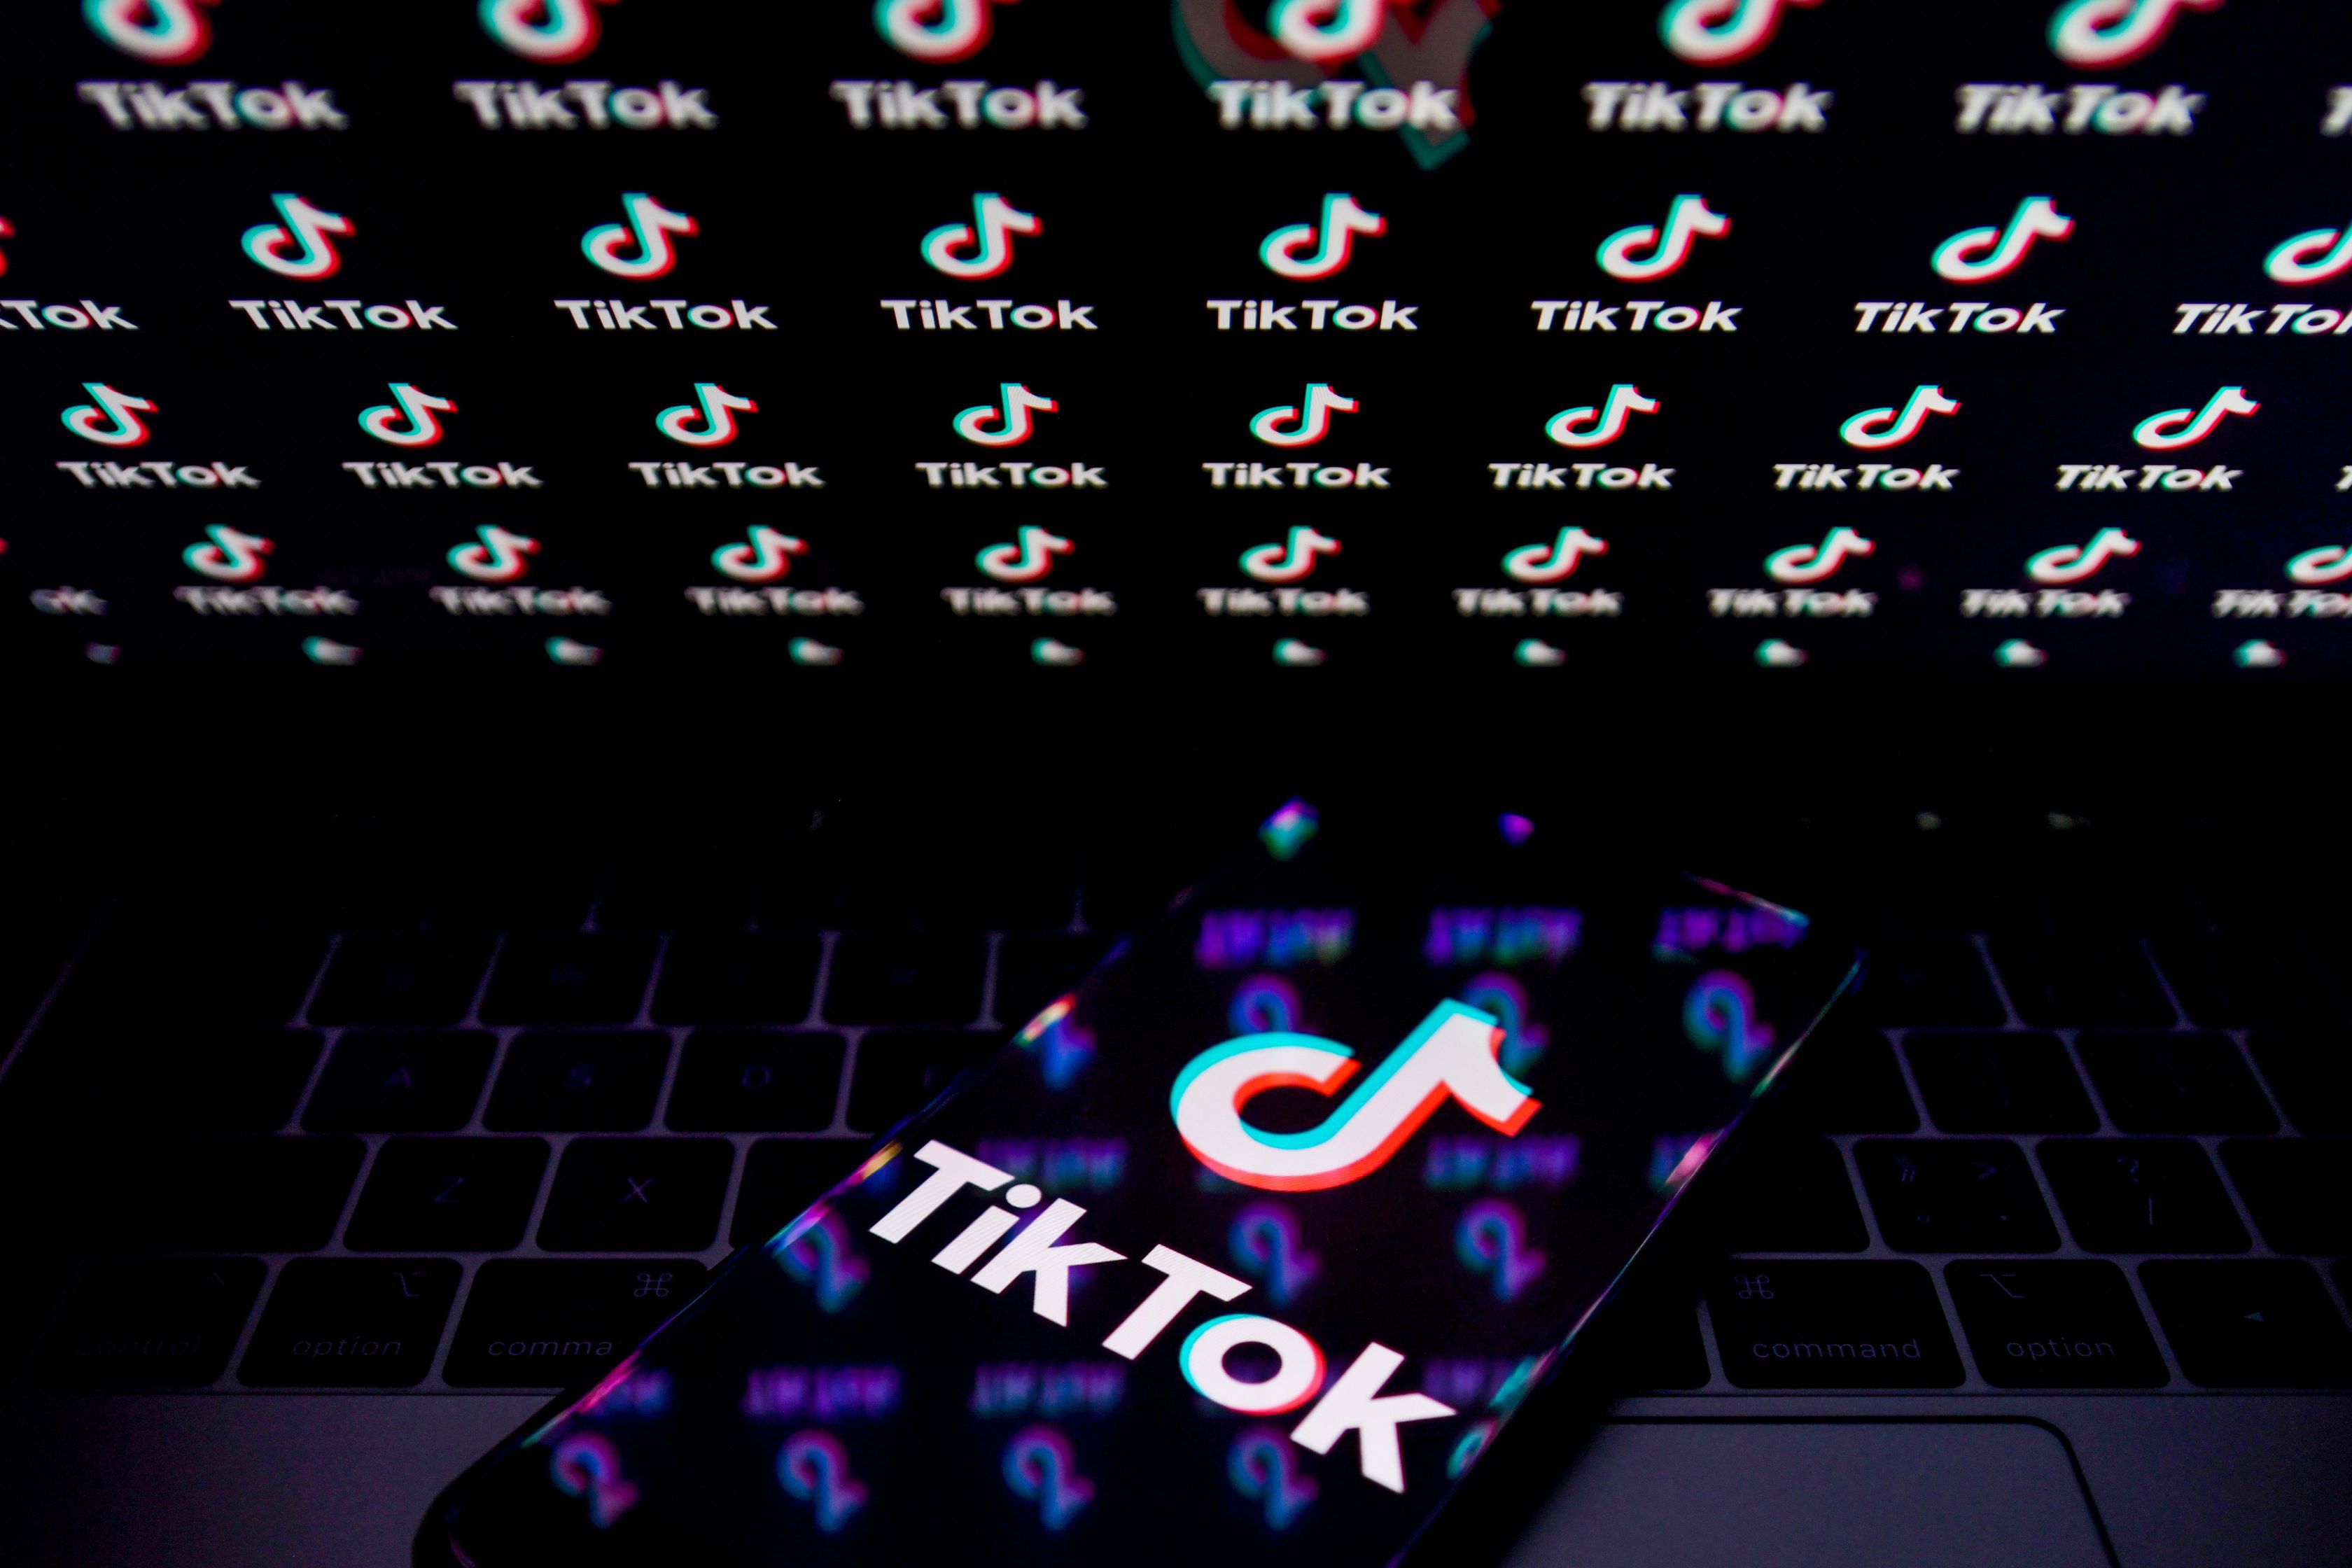 Un nou pretendent al afacerilor TikTok din SUA se arată: Platforma Triller şi-a anunţat intenţia de a prelua businessul celebrei aplicaţii chineze. Pe această listă se mai regăsesc şi giganţi precum Microsoft sau Oracle